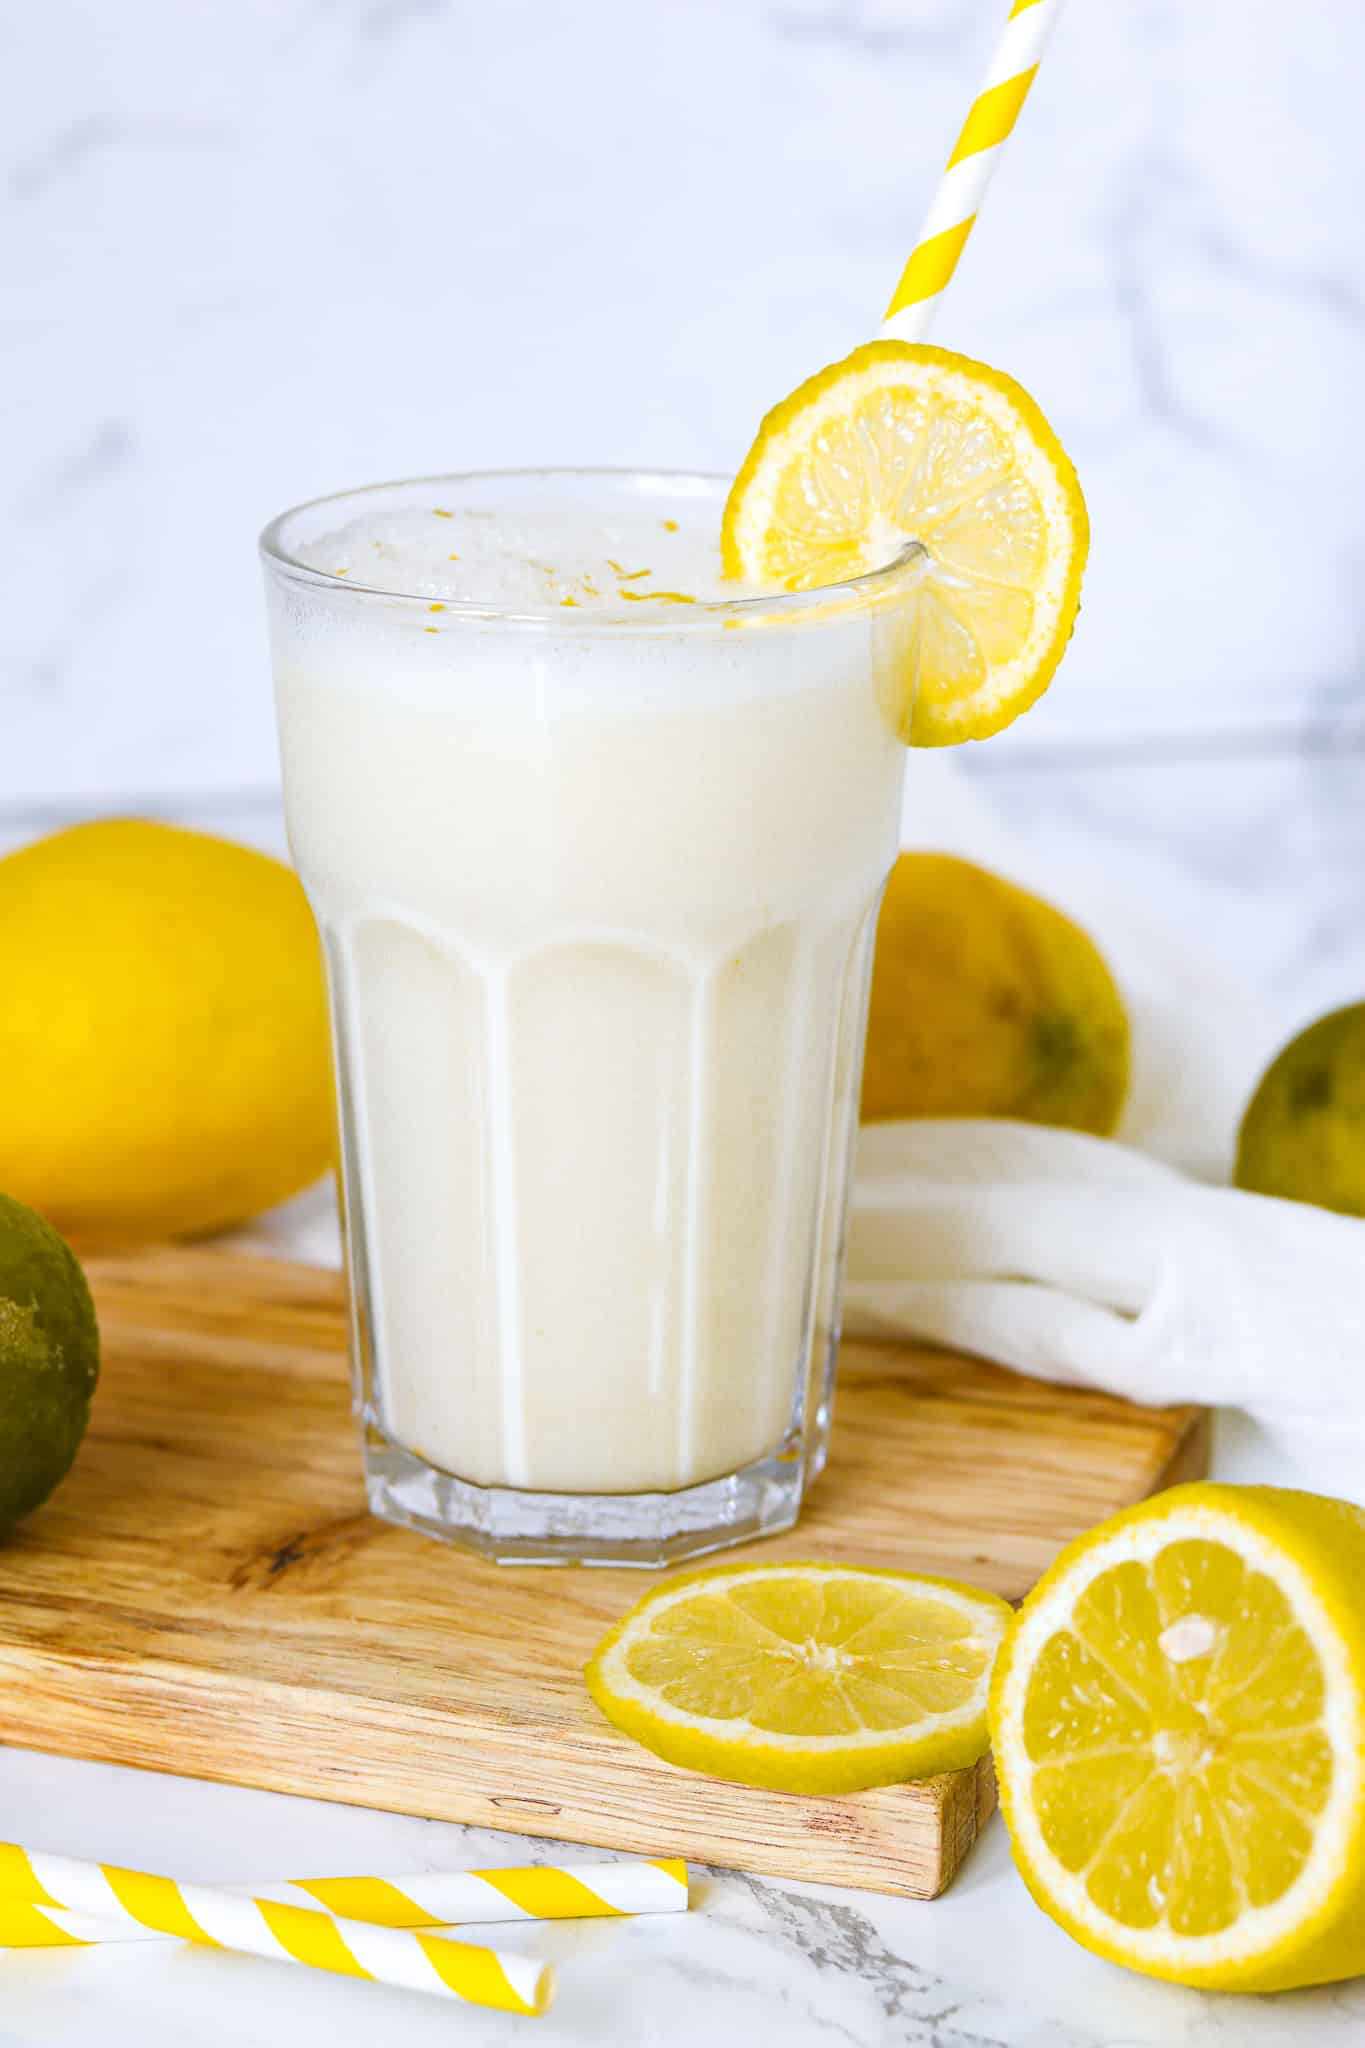 erfrischende Zitronenbuttermilch im Glas mit gelbem Strohhalm und Zitronen